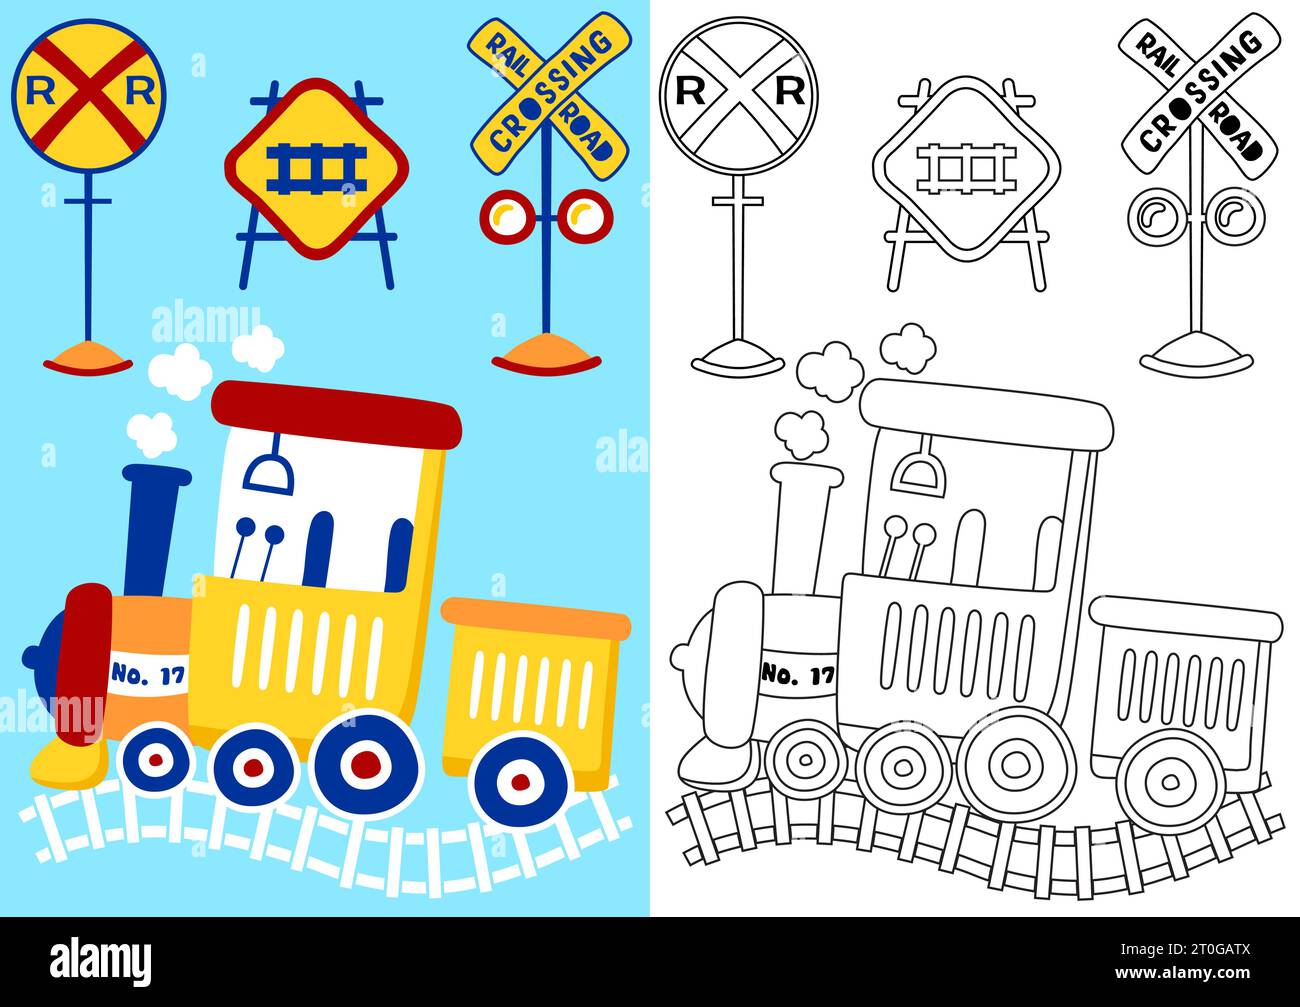 Dampfeisenbahn mit Eisenbahnschildern, Vektor-Zeichentrickillustration, Malbuch oder Seite Stock Vektor